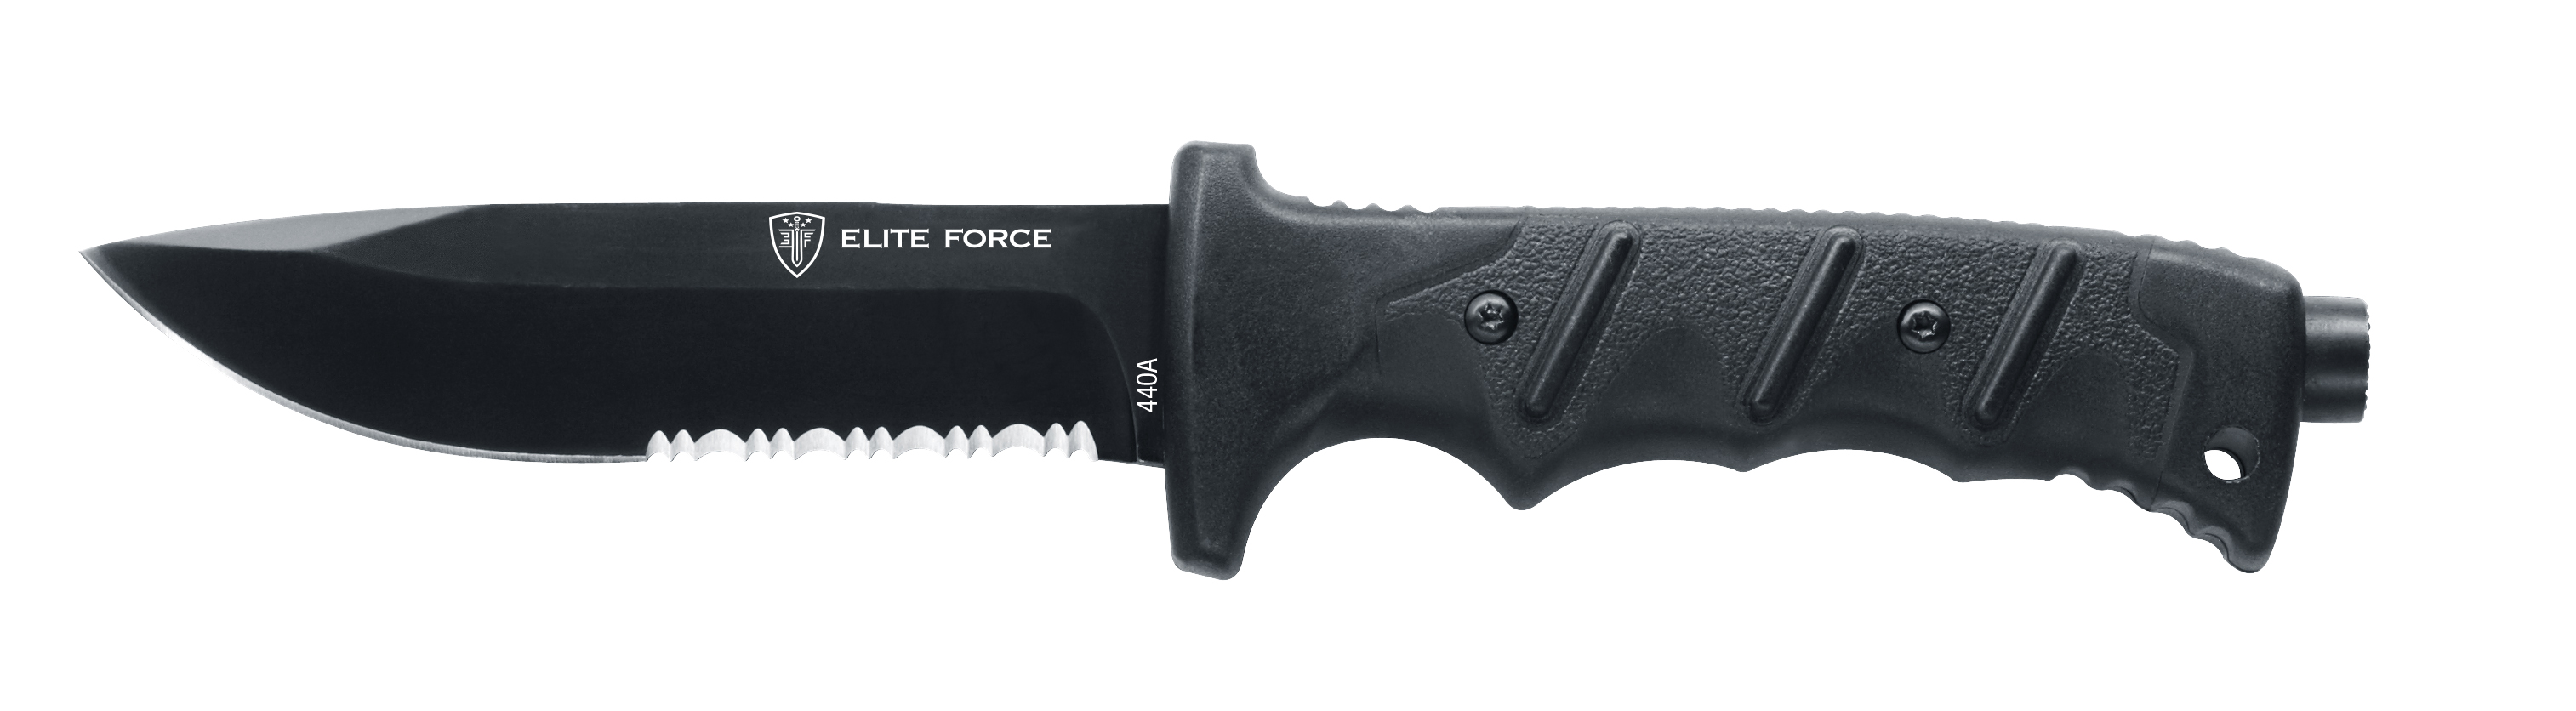 ELITE FORCE (Umarex) Knife EF703 Kit